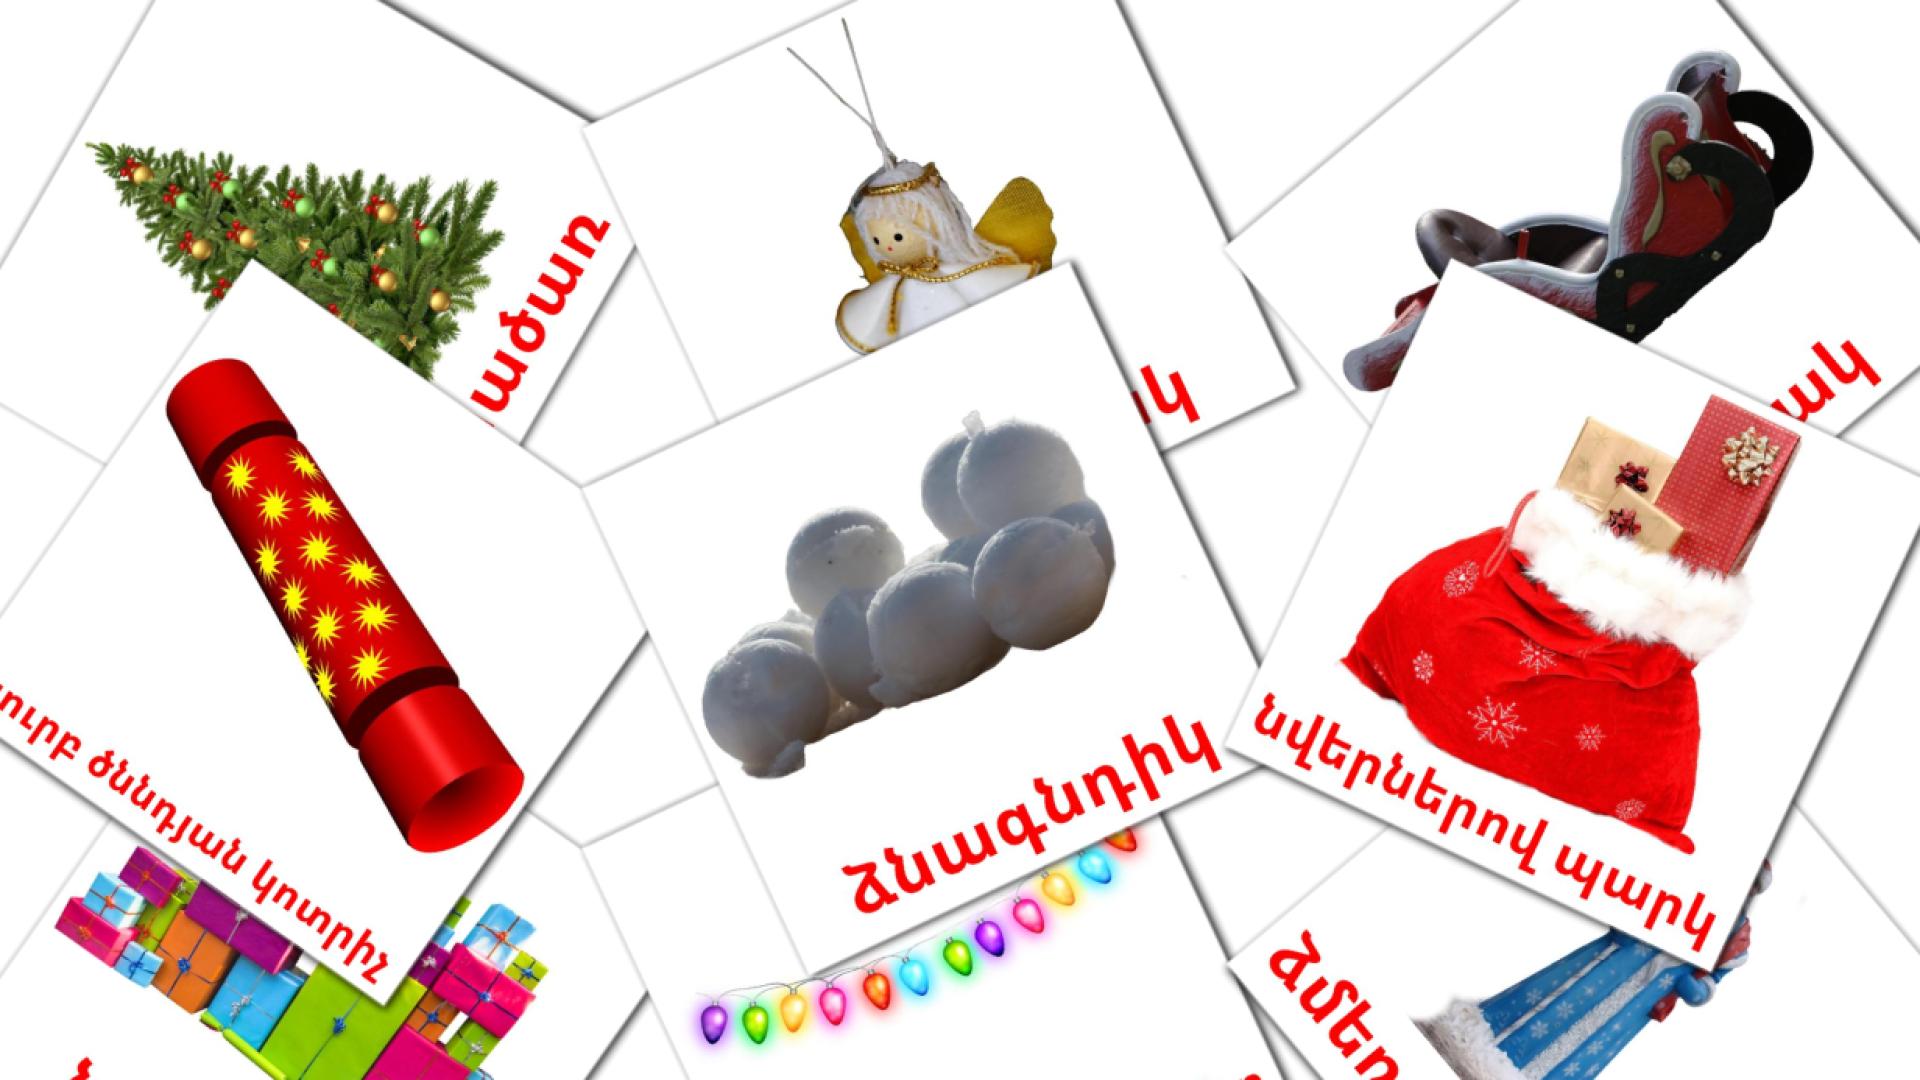 Christmas - armenian vocabulary cards